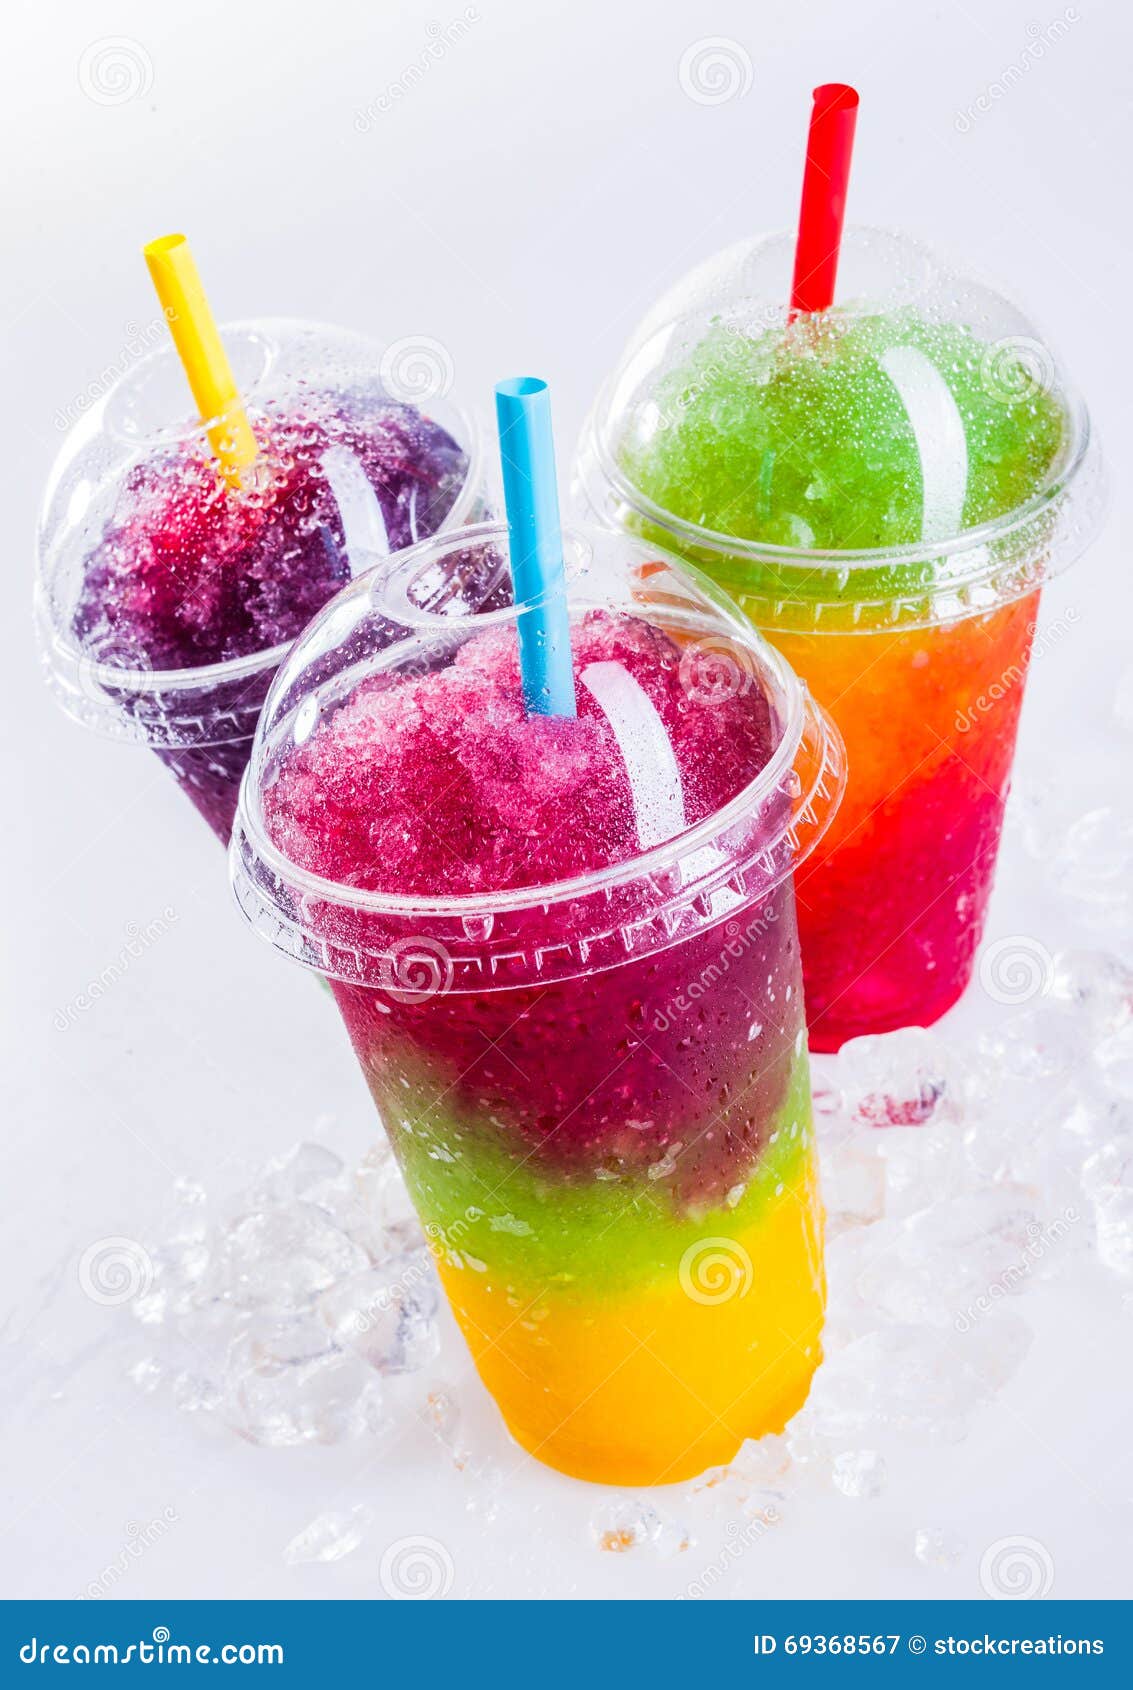 Frozen Rainbow Slush Drinks Chilling on Ice Stock Image - Image of ...